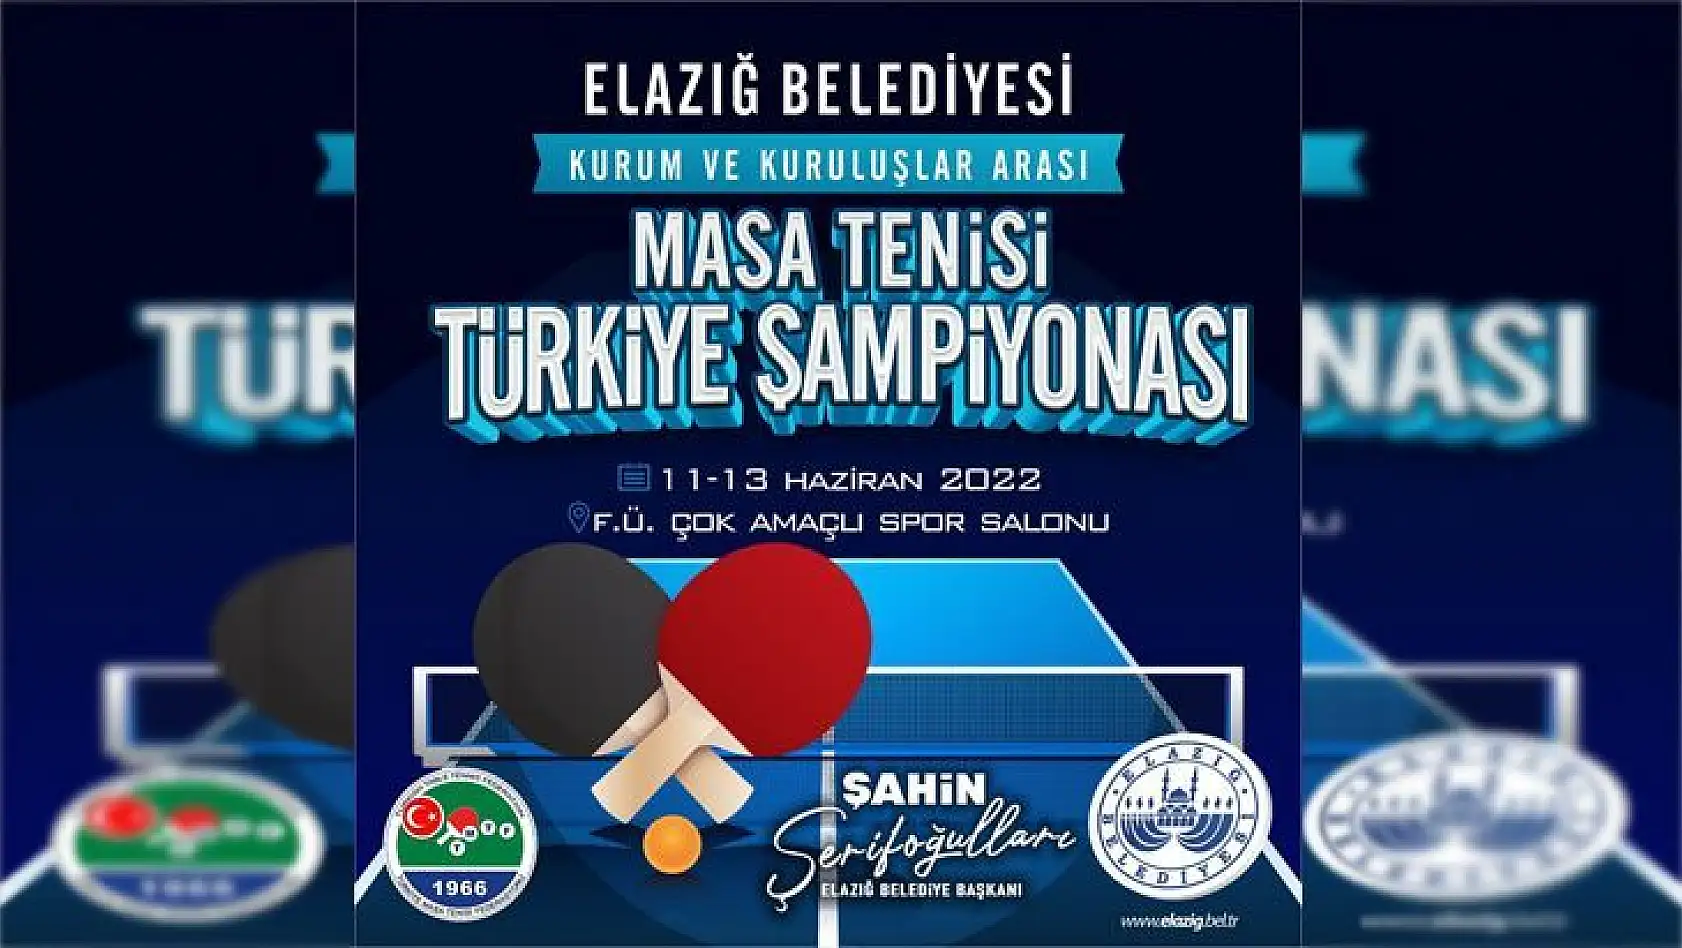 Elazığ Belediyesi'nin Organize Edeceği Kurum ve Kuruluşlar Arası Masa Tenisi Türkiye Şampiyonası Başlıyor